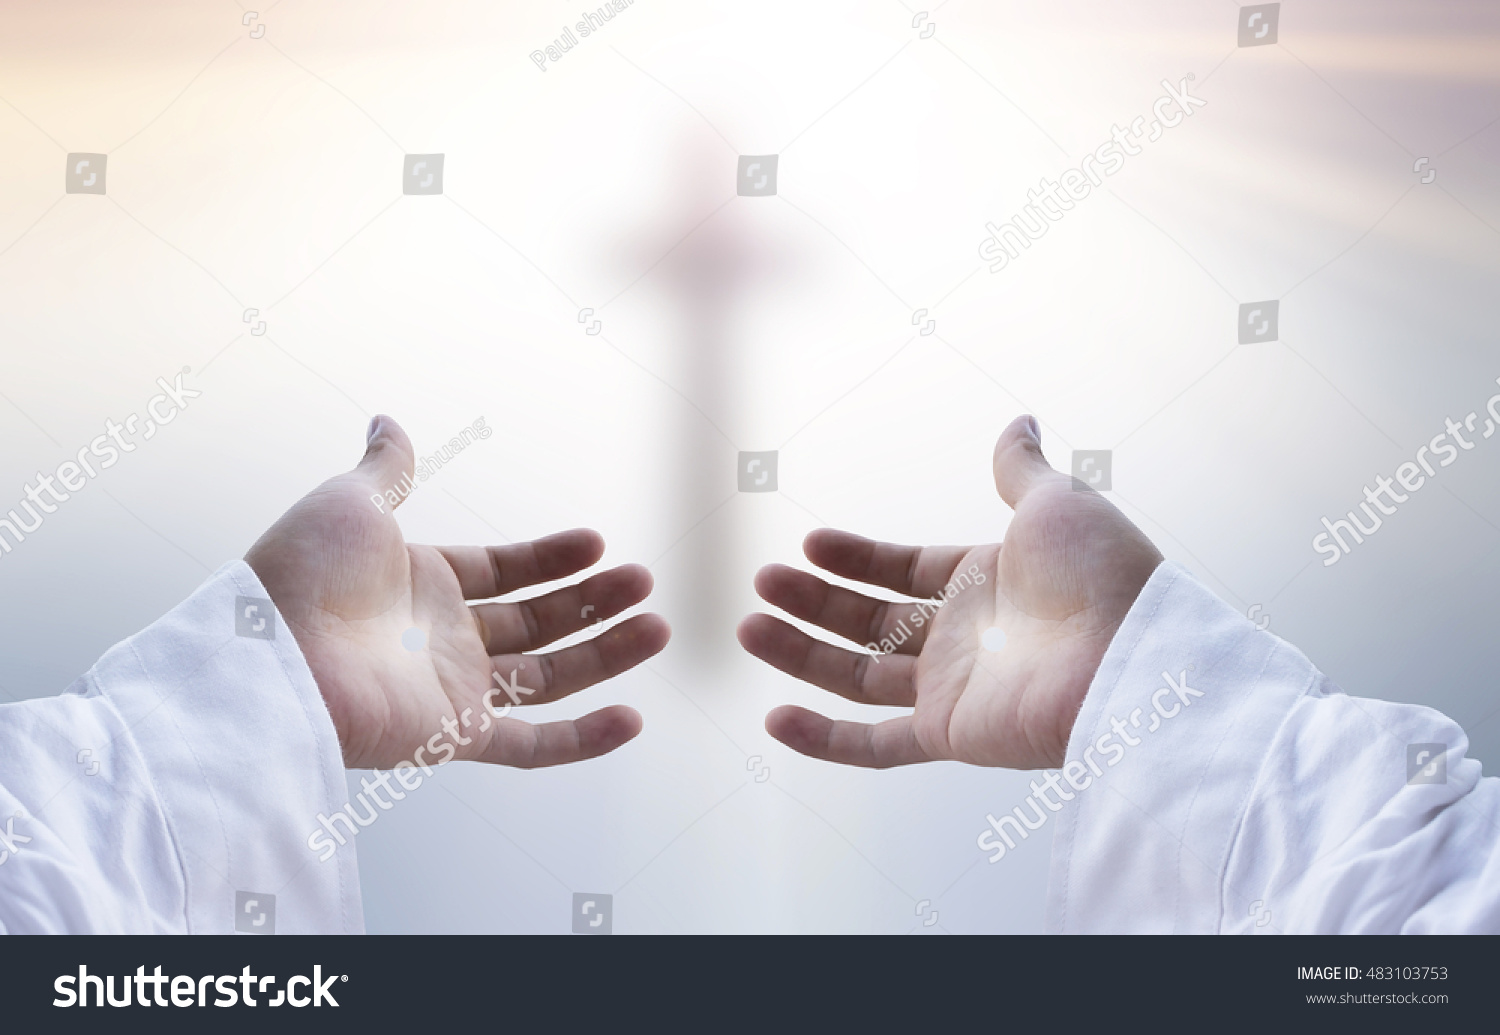 gods hand reaching down